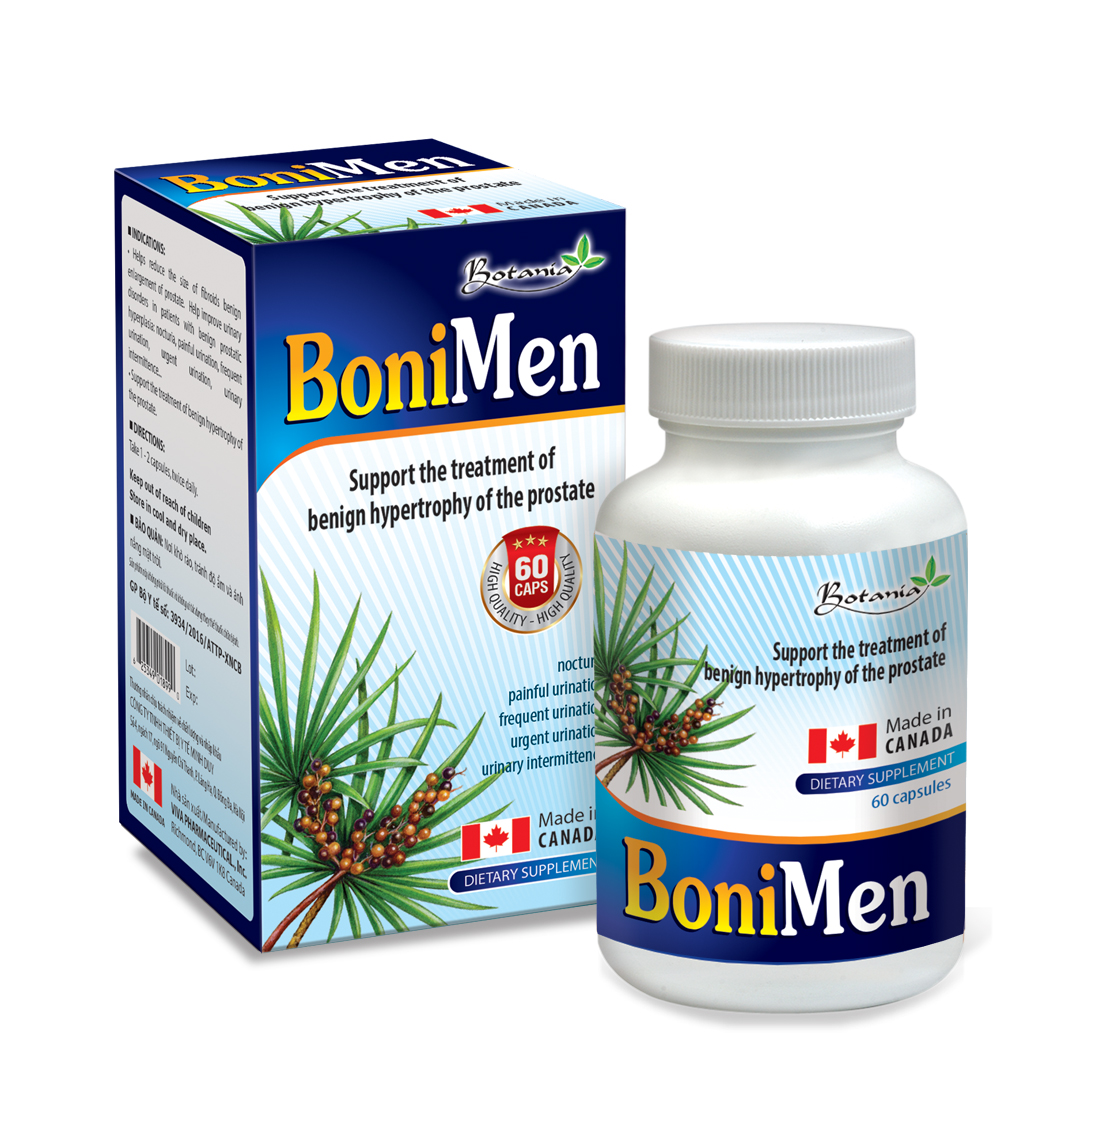 BoniMen - Sản phẩm hiệu quả cho bệnh nhân phì đại tiền liệt tuyến